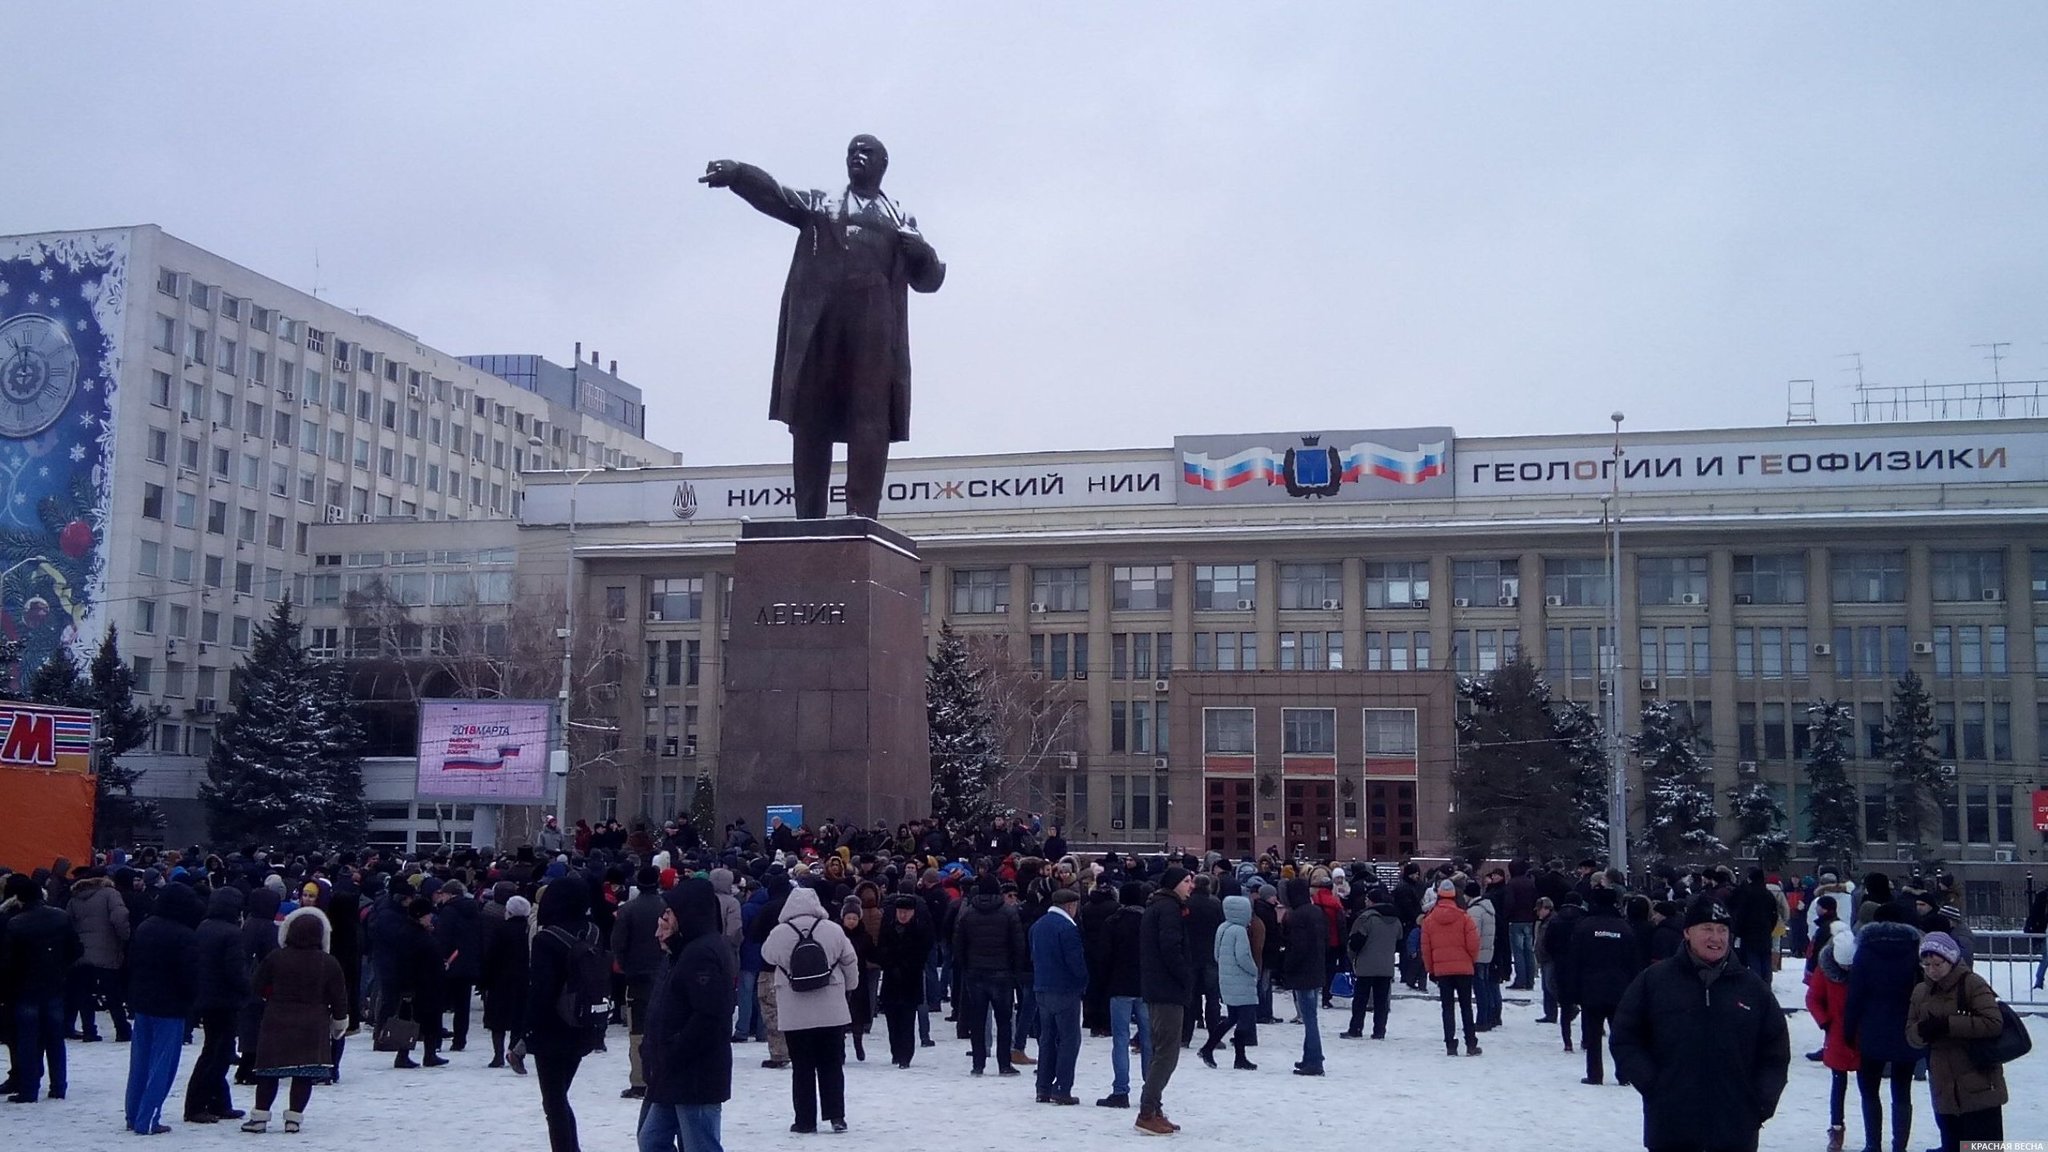 Собрание за выдвижение А. Навального в Саратове